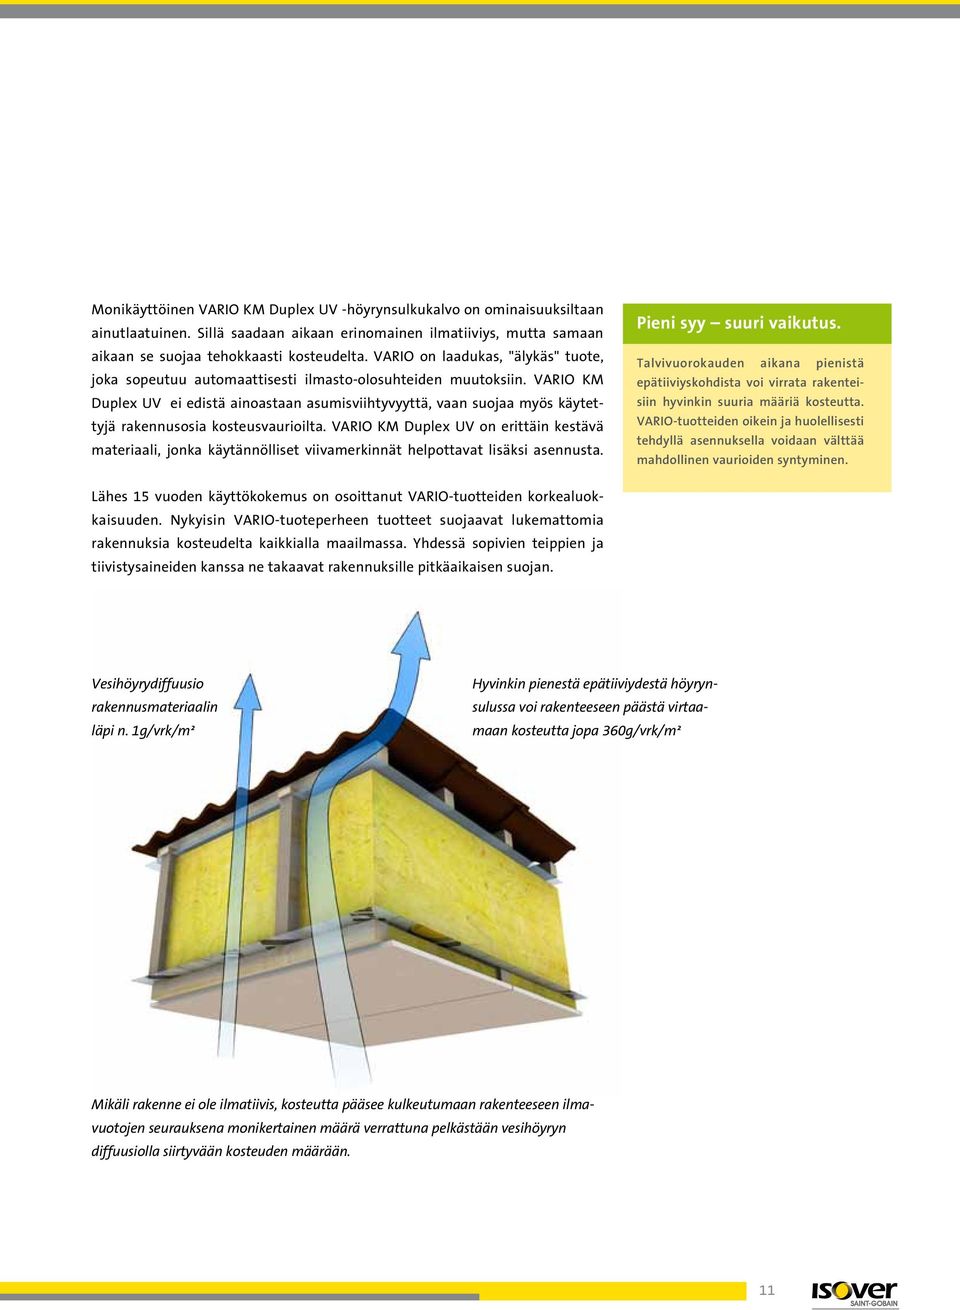 VARIO KM Duplex UV ei edistä ainoastaan asumisviihtyvyyttä, vaan suojaa myös käytettyjä rakennusosia kosteusvaurioilta.